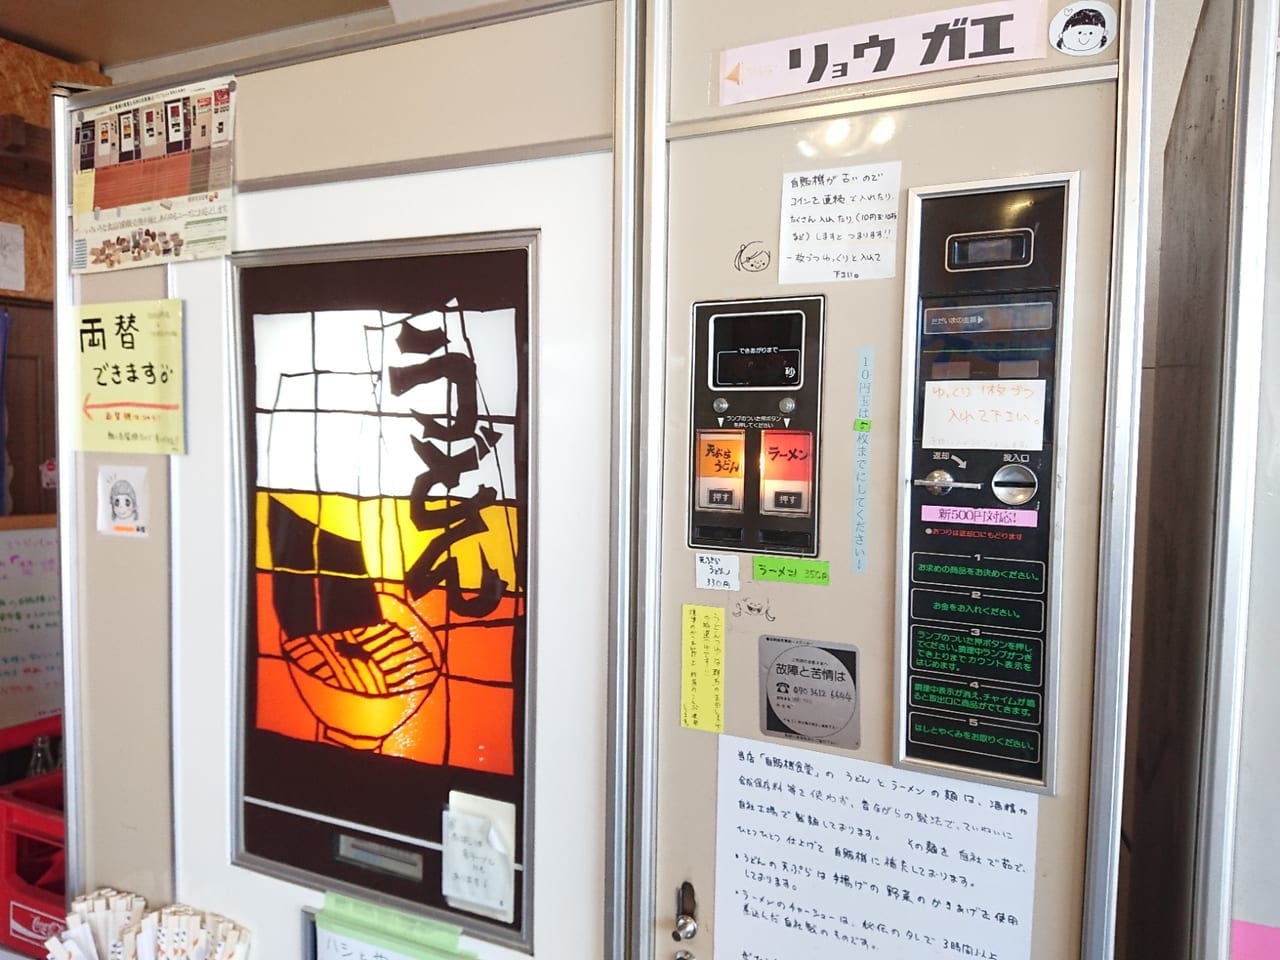 群馬県伊勢崎市の自販機食堂の食事系自販機の様子